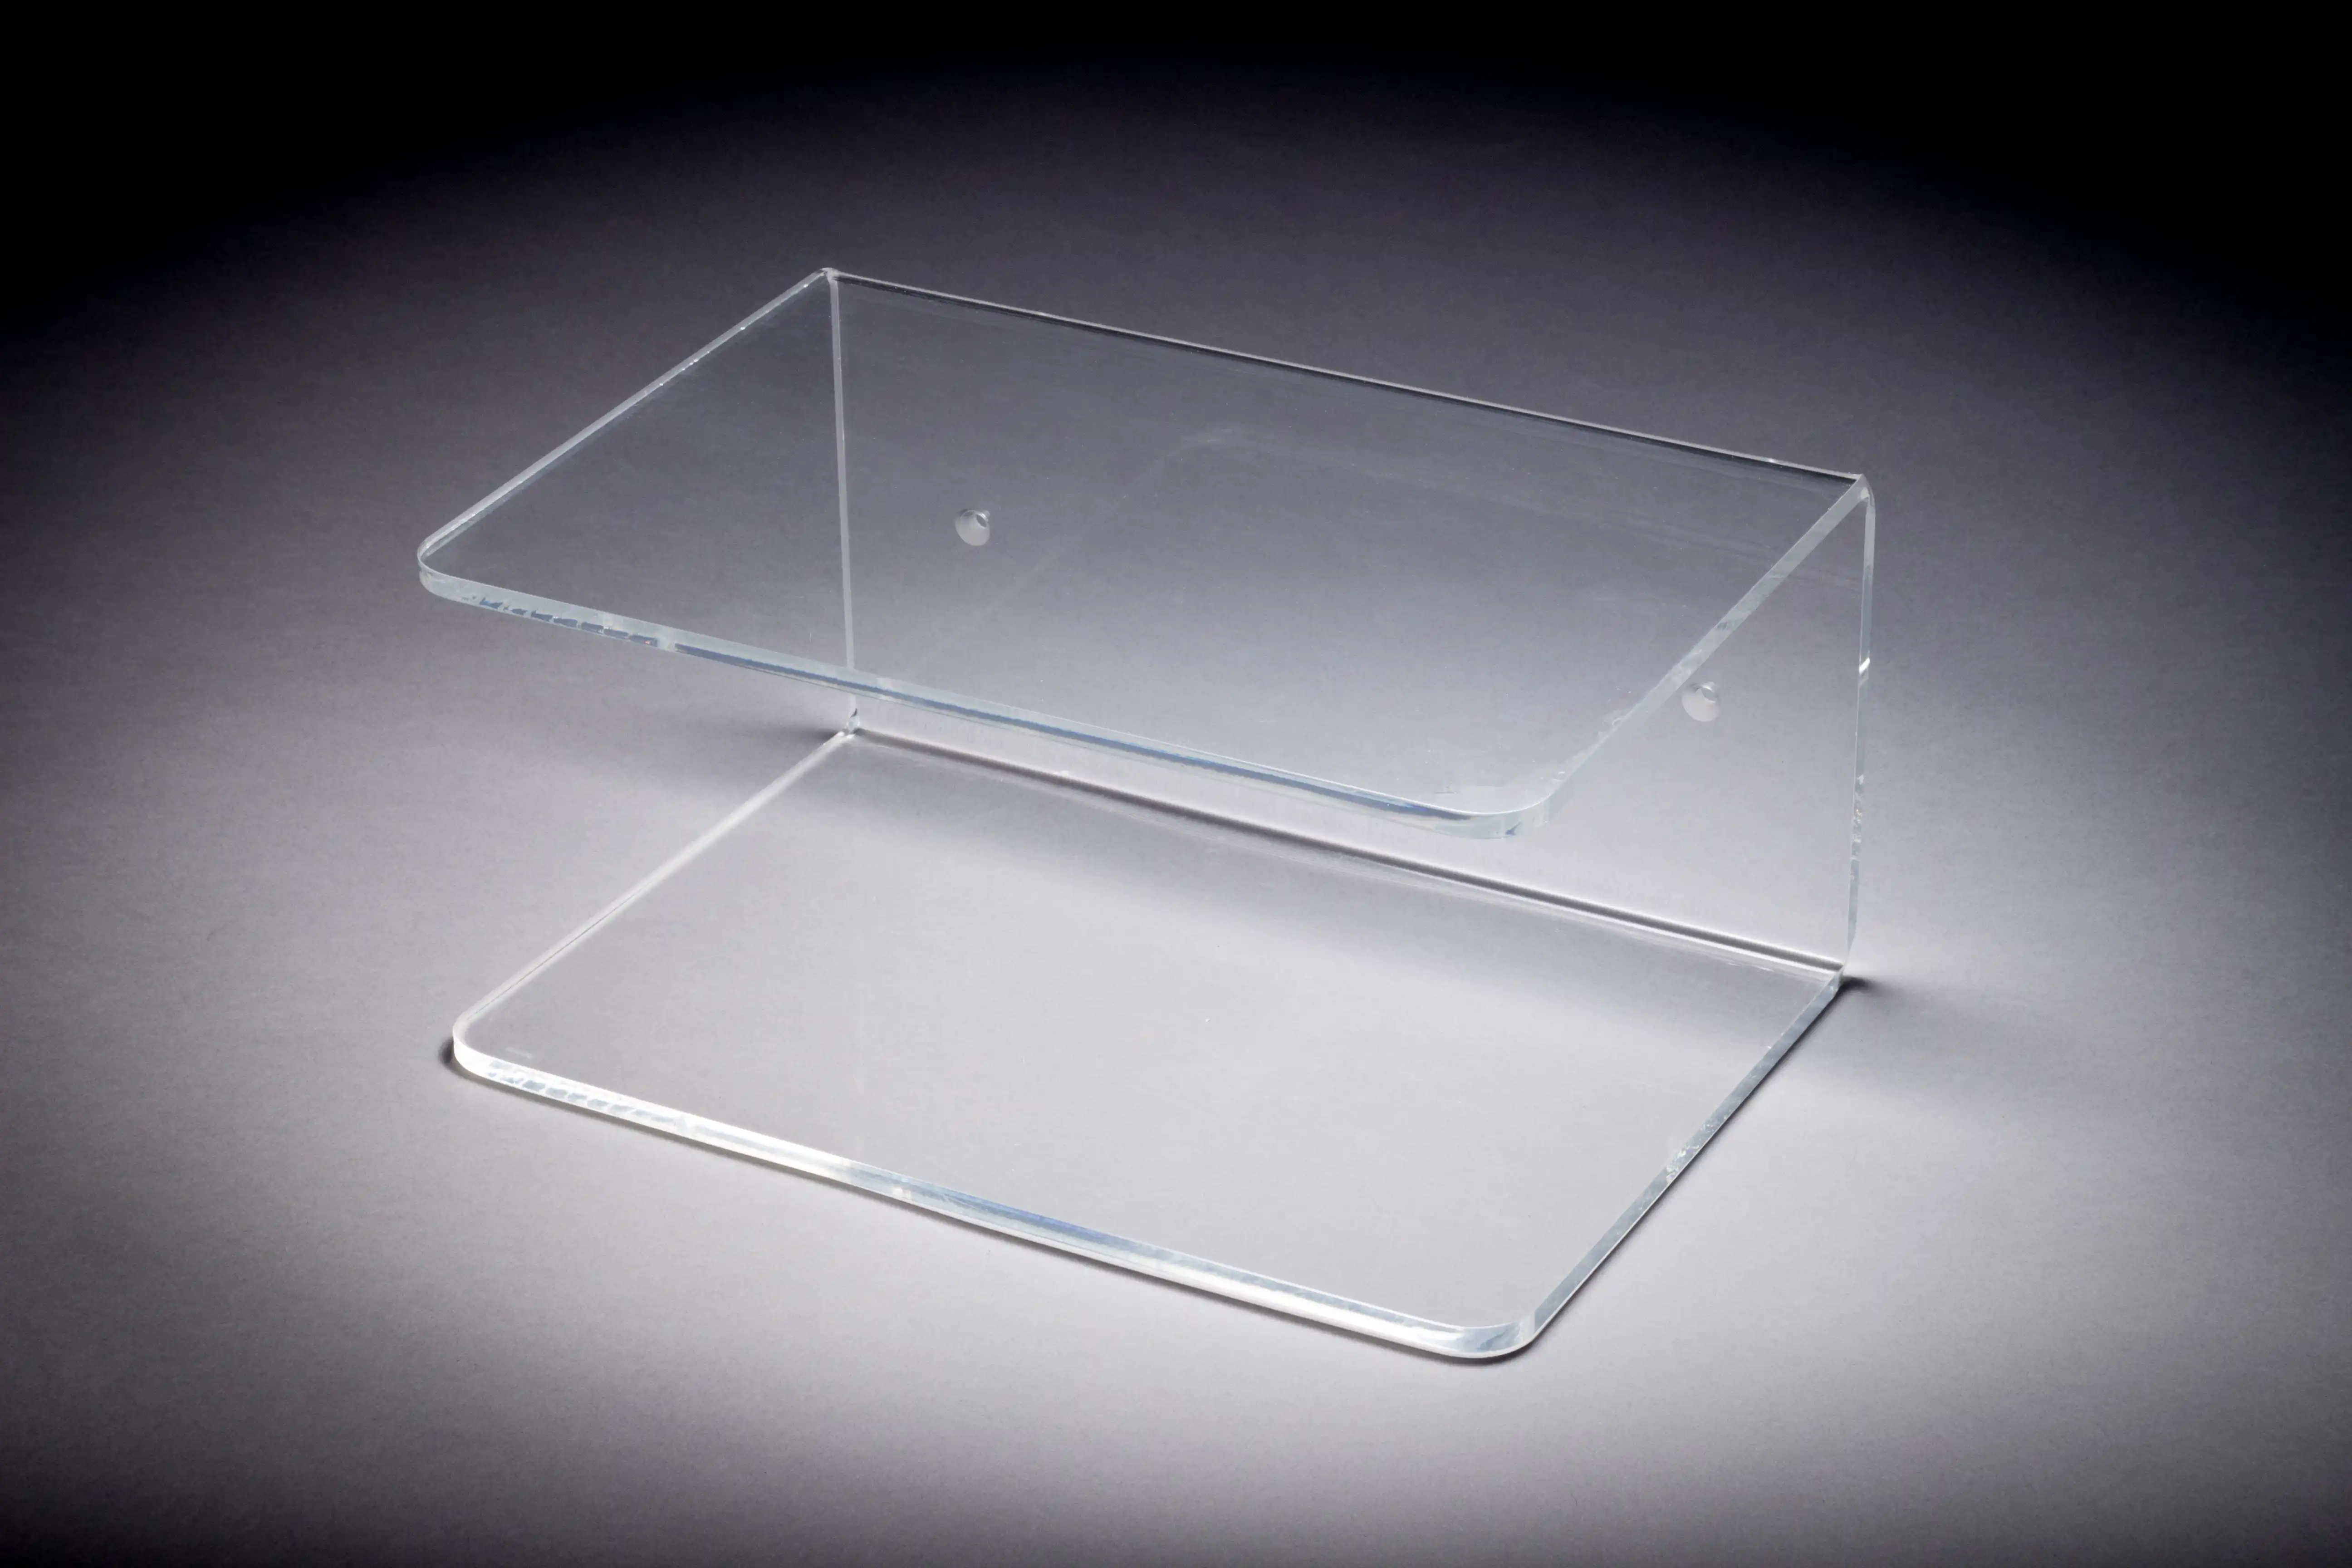 Tabletts aus Plexiglas/Acryl als Ablagefläche für Armlehnen, Hocker etc.